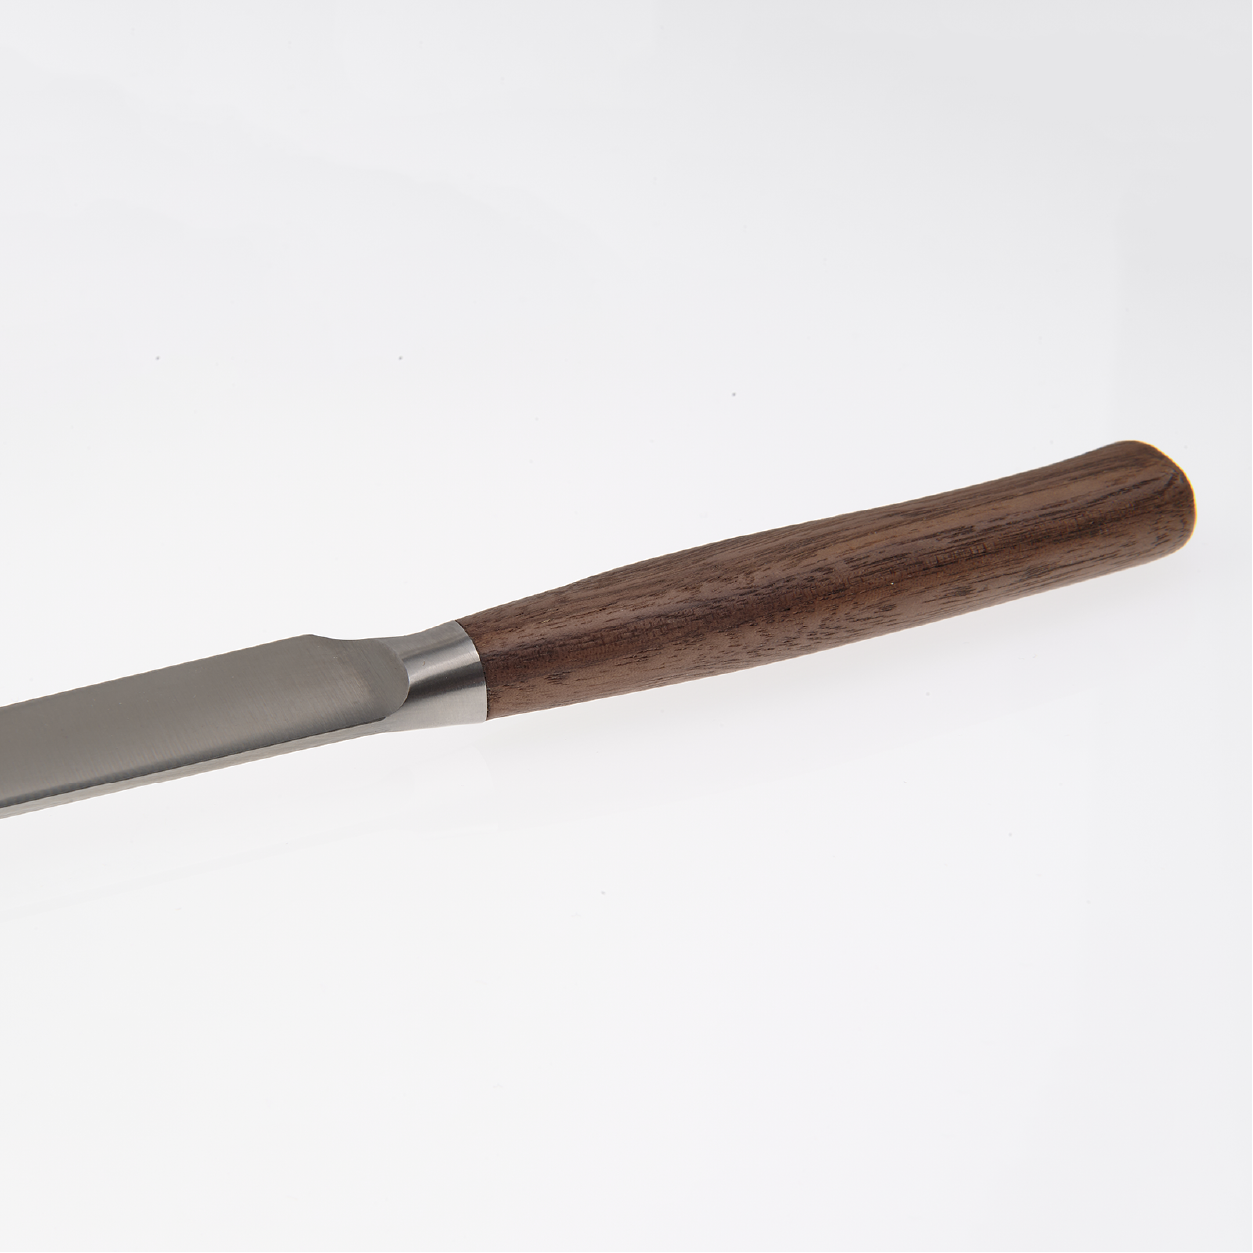 1401 Steakmesser / Universalmesser | Nussbaum 12 cm